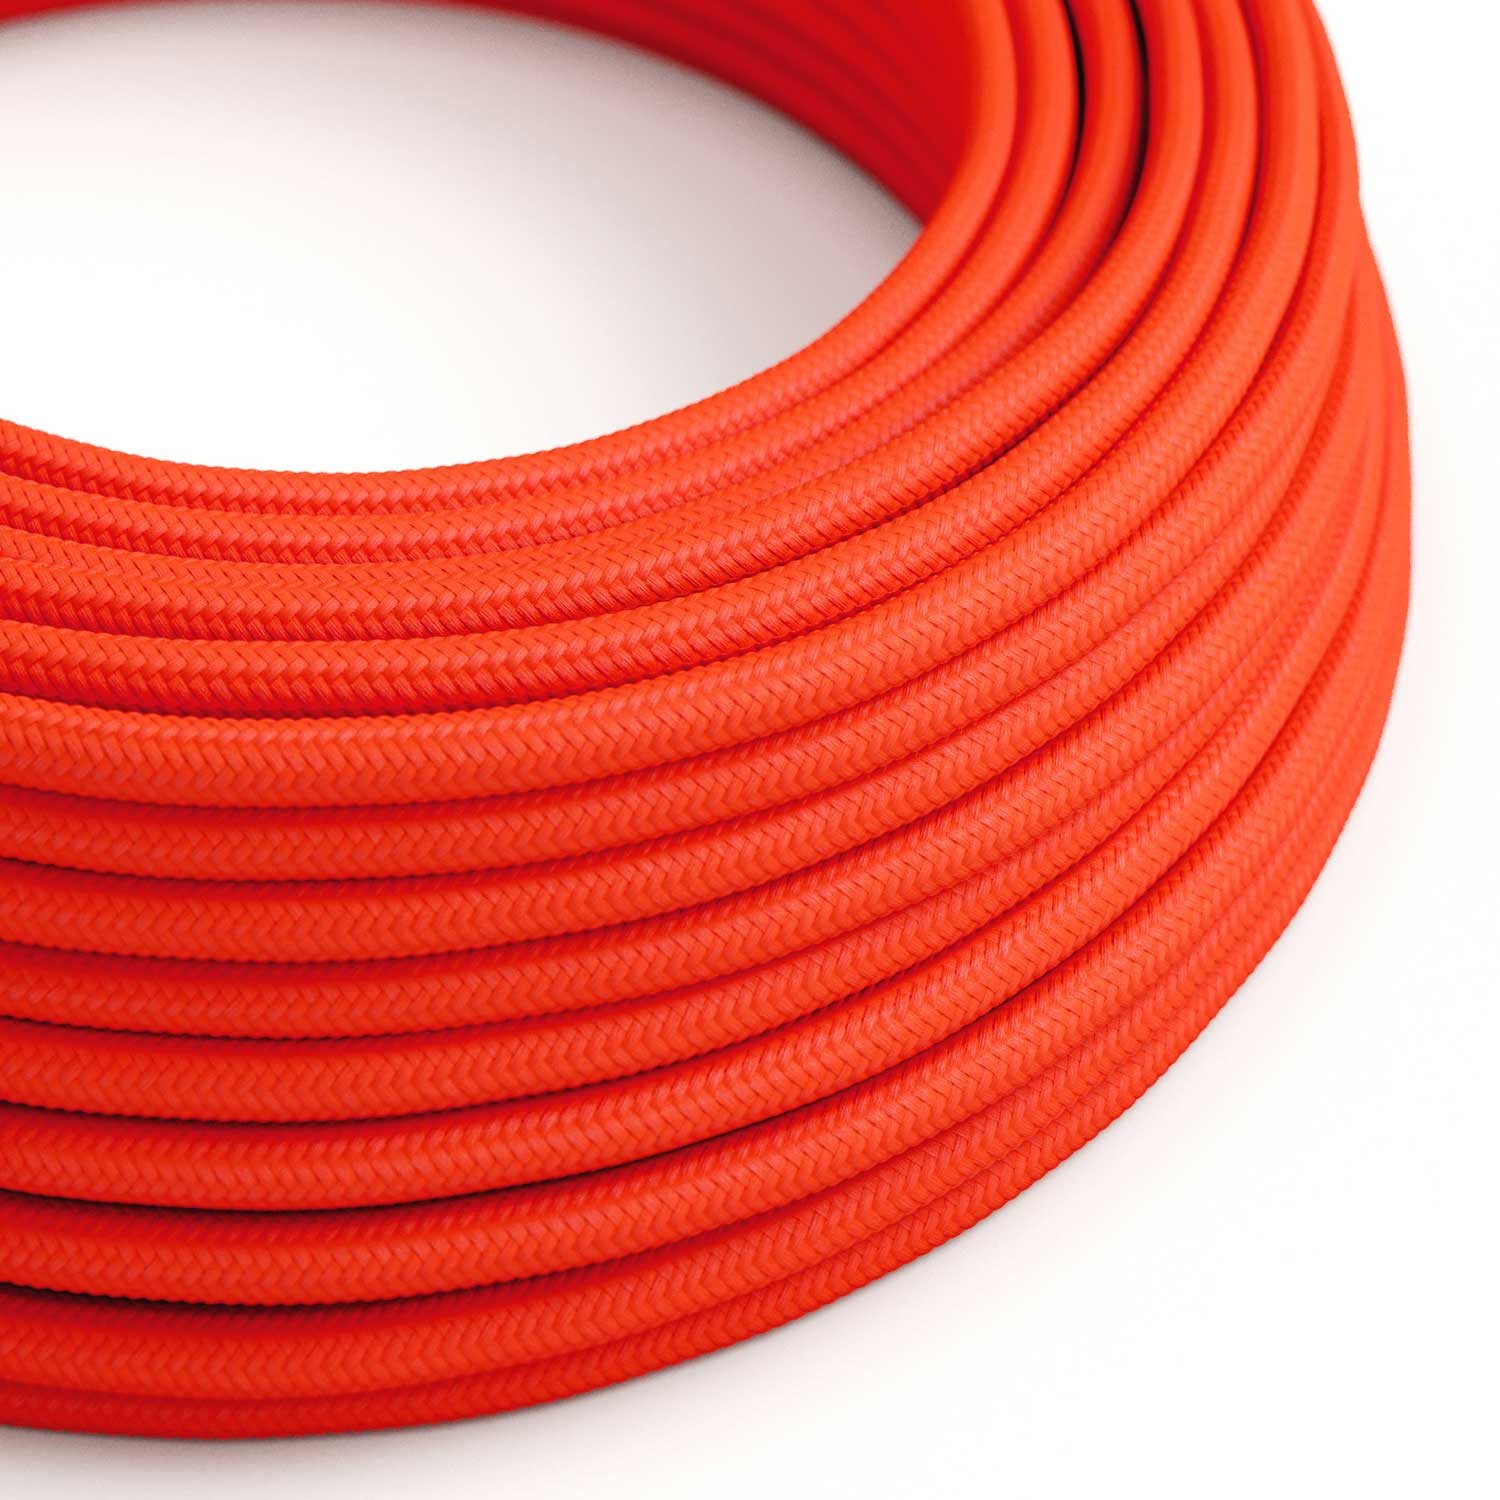 Okrúhly textilný elektrický kábel, umelý hodváb, jednofarebný, RF15 Fluo oranžová